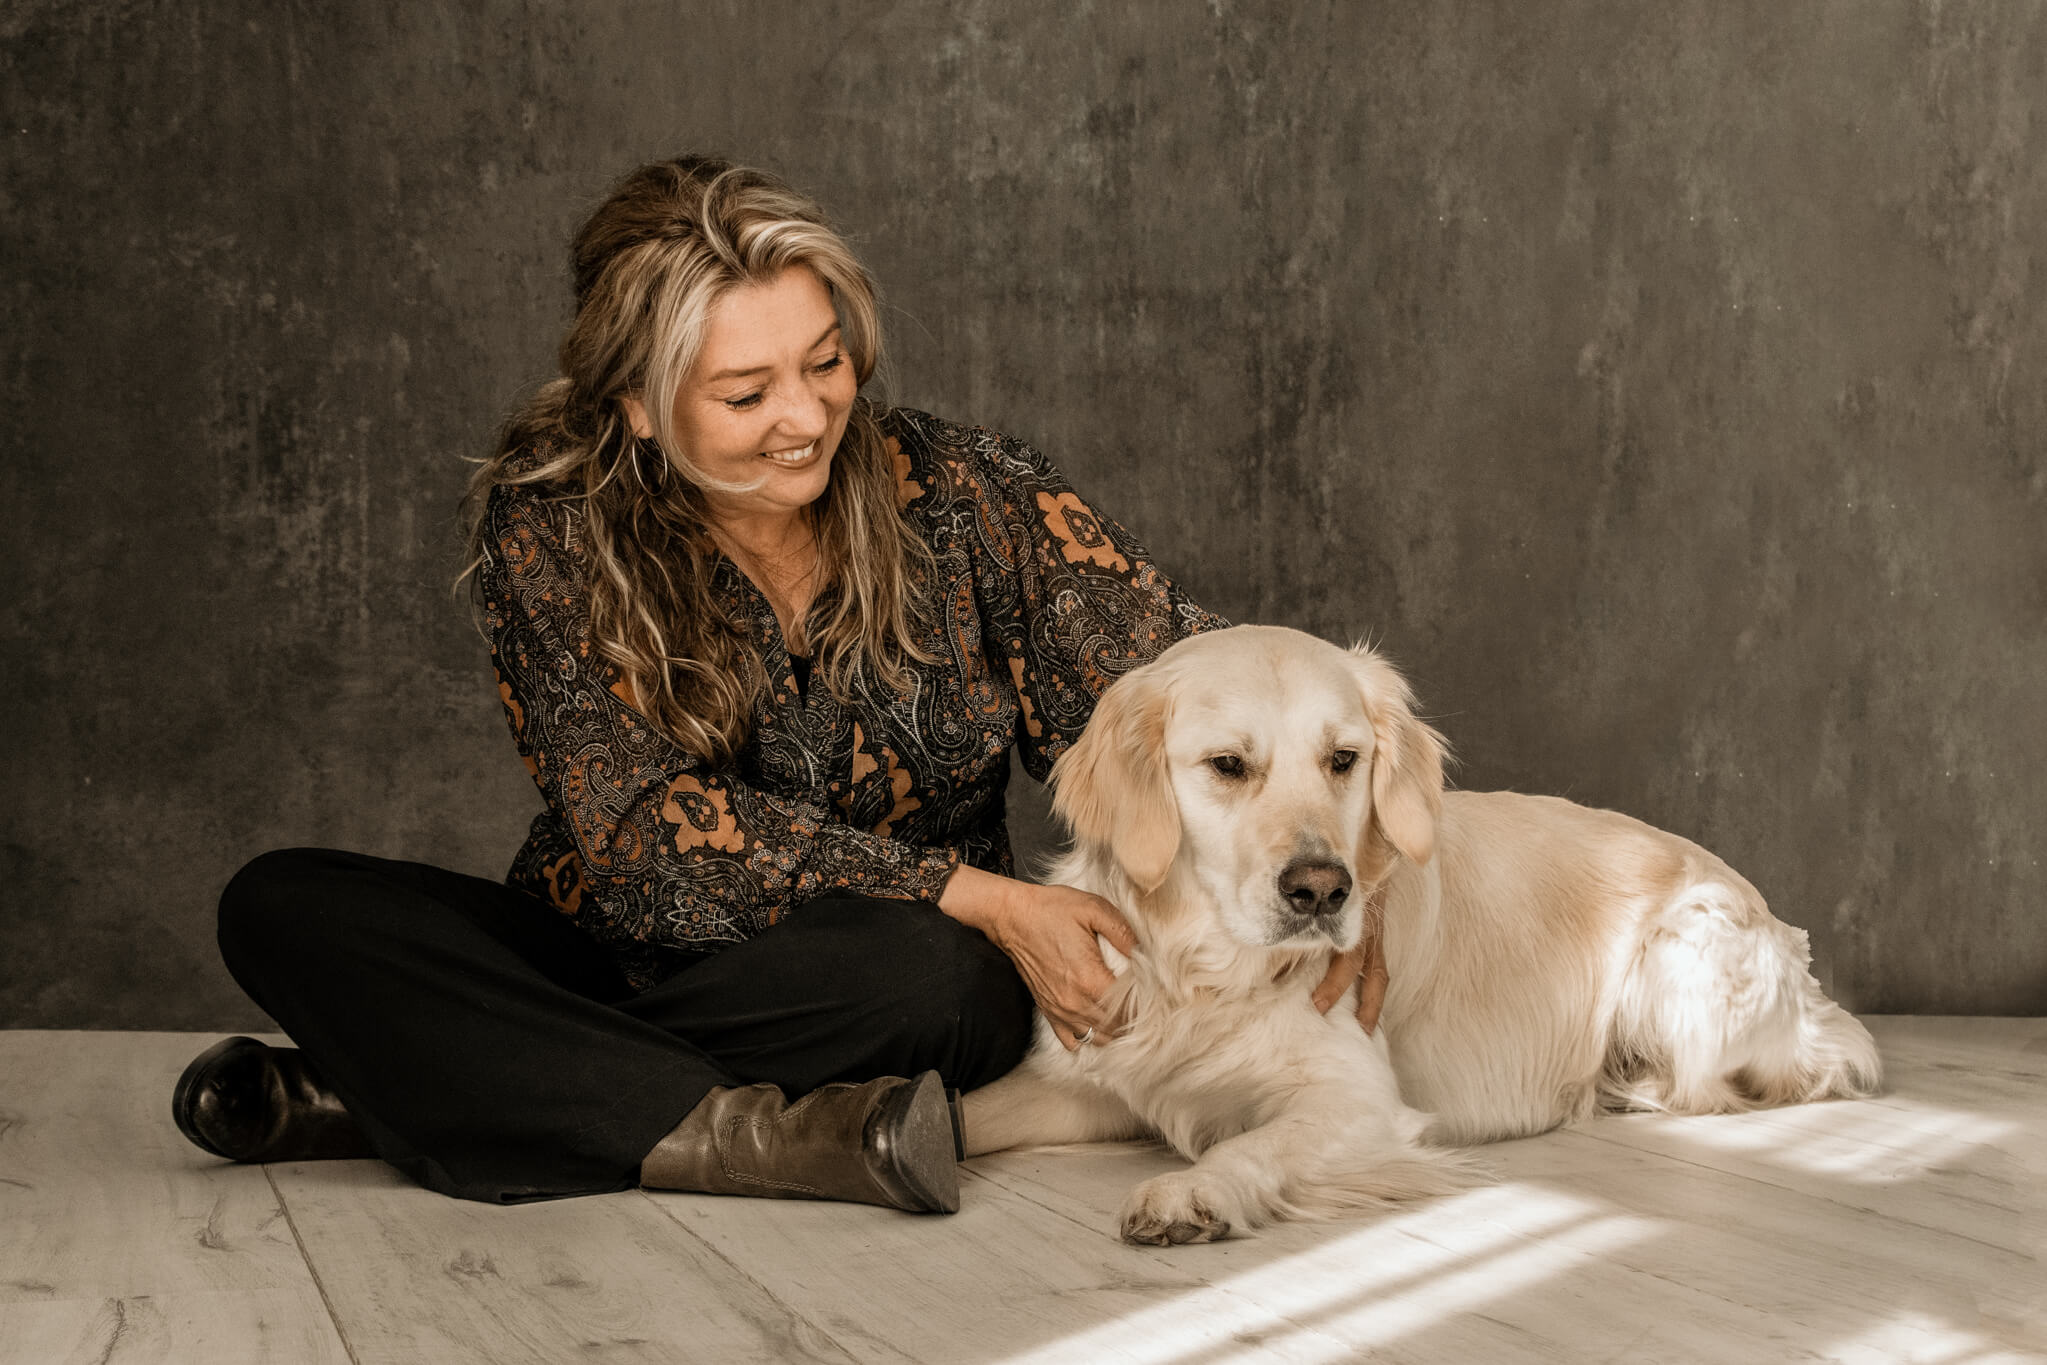 Yvette Eelman Fotograaf bij droombeeld fotografie met hond